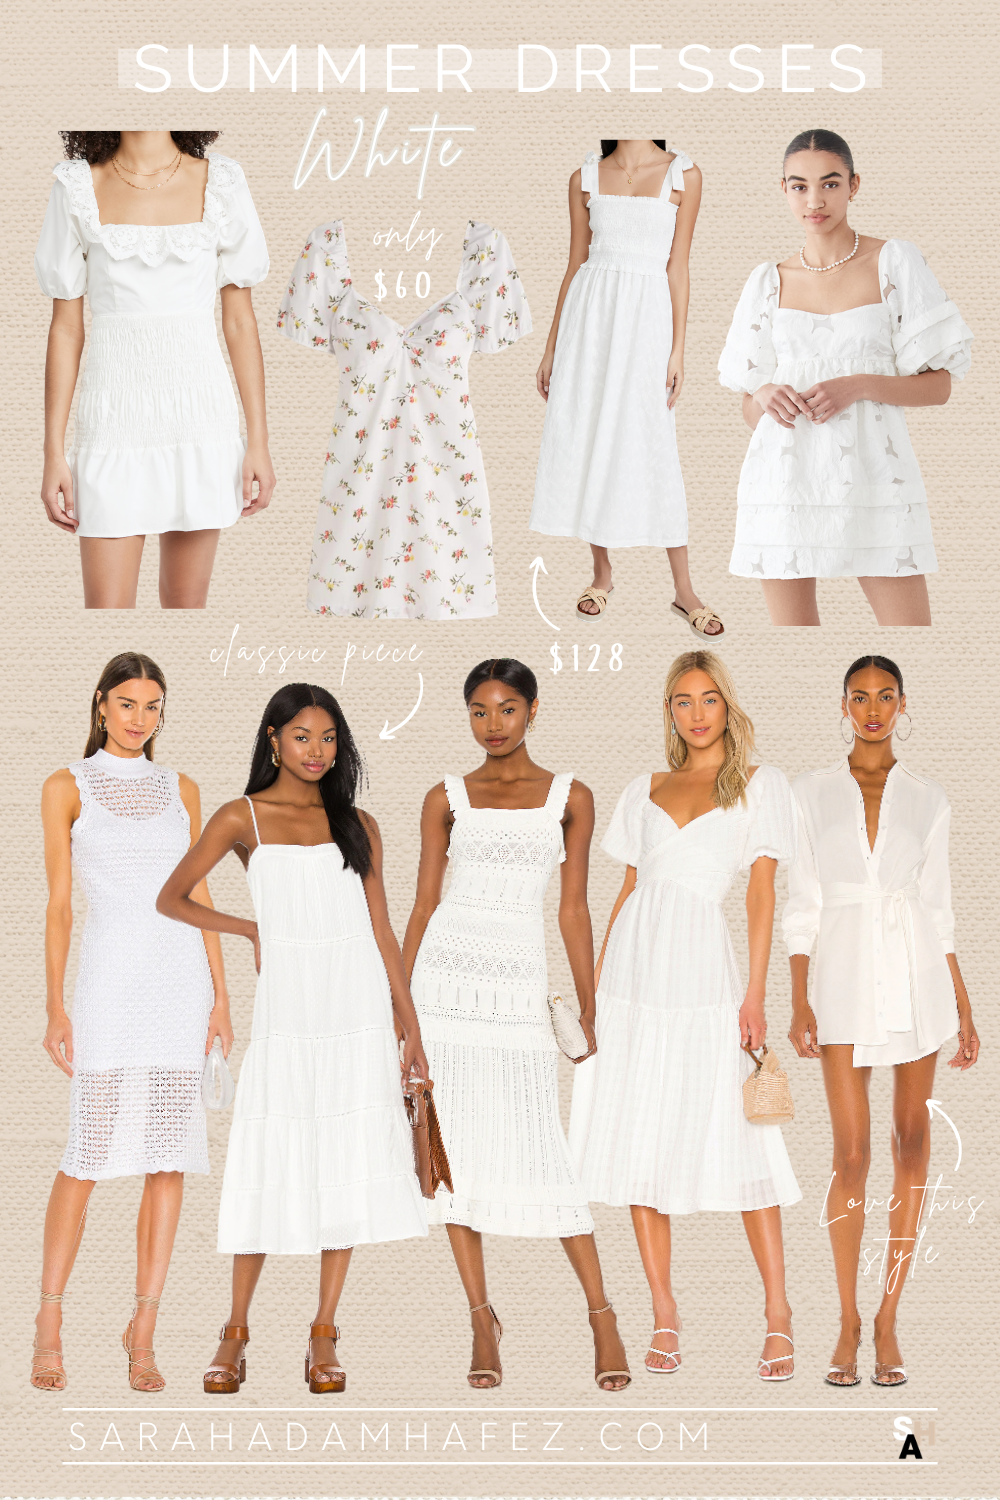 white dress, white dress outfit, white dress classy, white dress summer